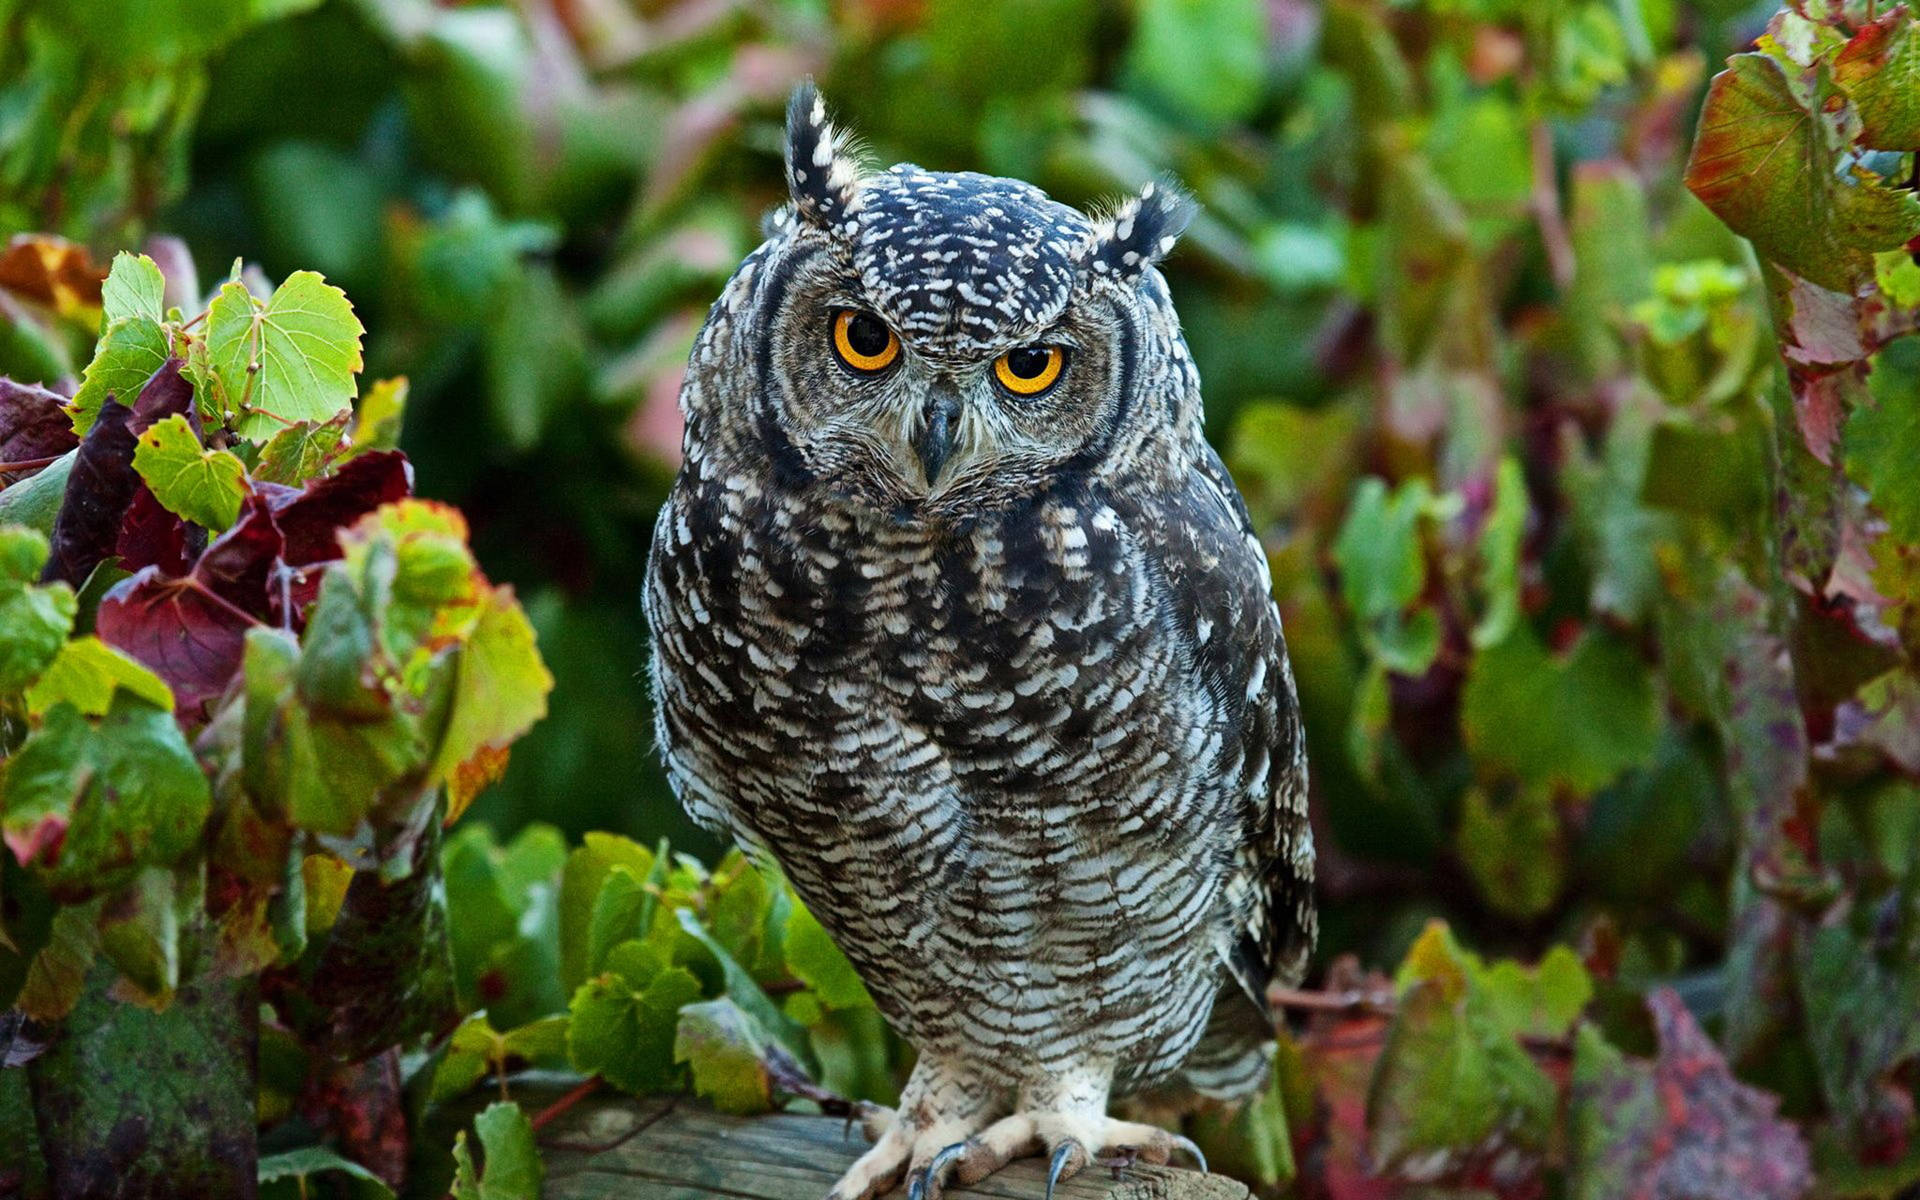 Cute Owl In Vineyard